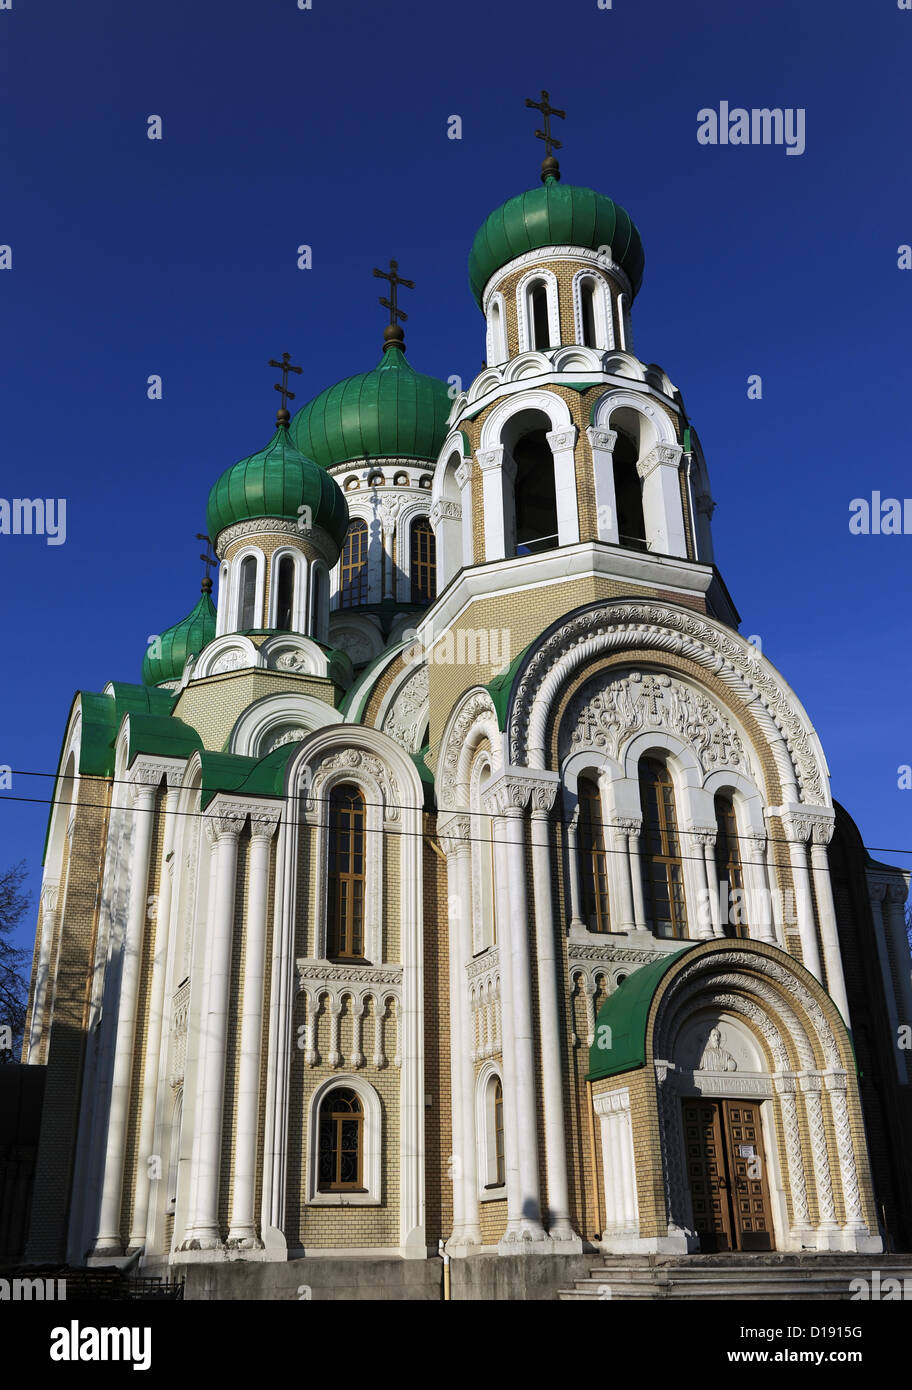 La Lituania. Vilnius. Chiesa ortodossa di San Michele e San Costantino o Romanov chiesa costruita nel 1913 da Kolesnikov. Foto Stock